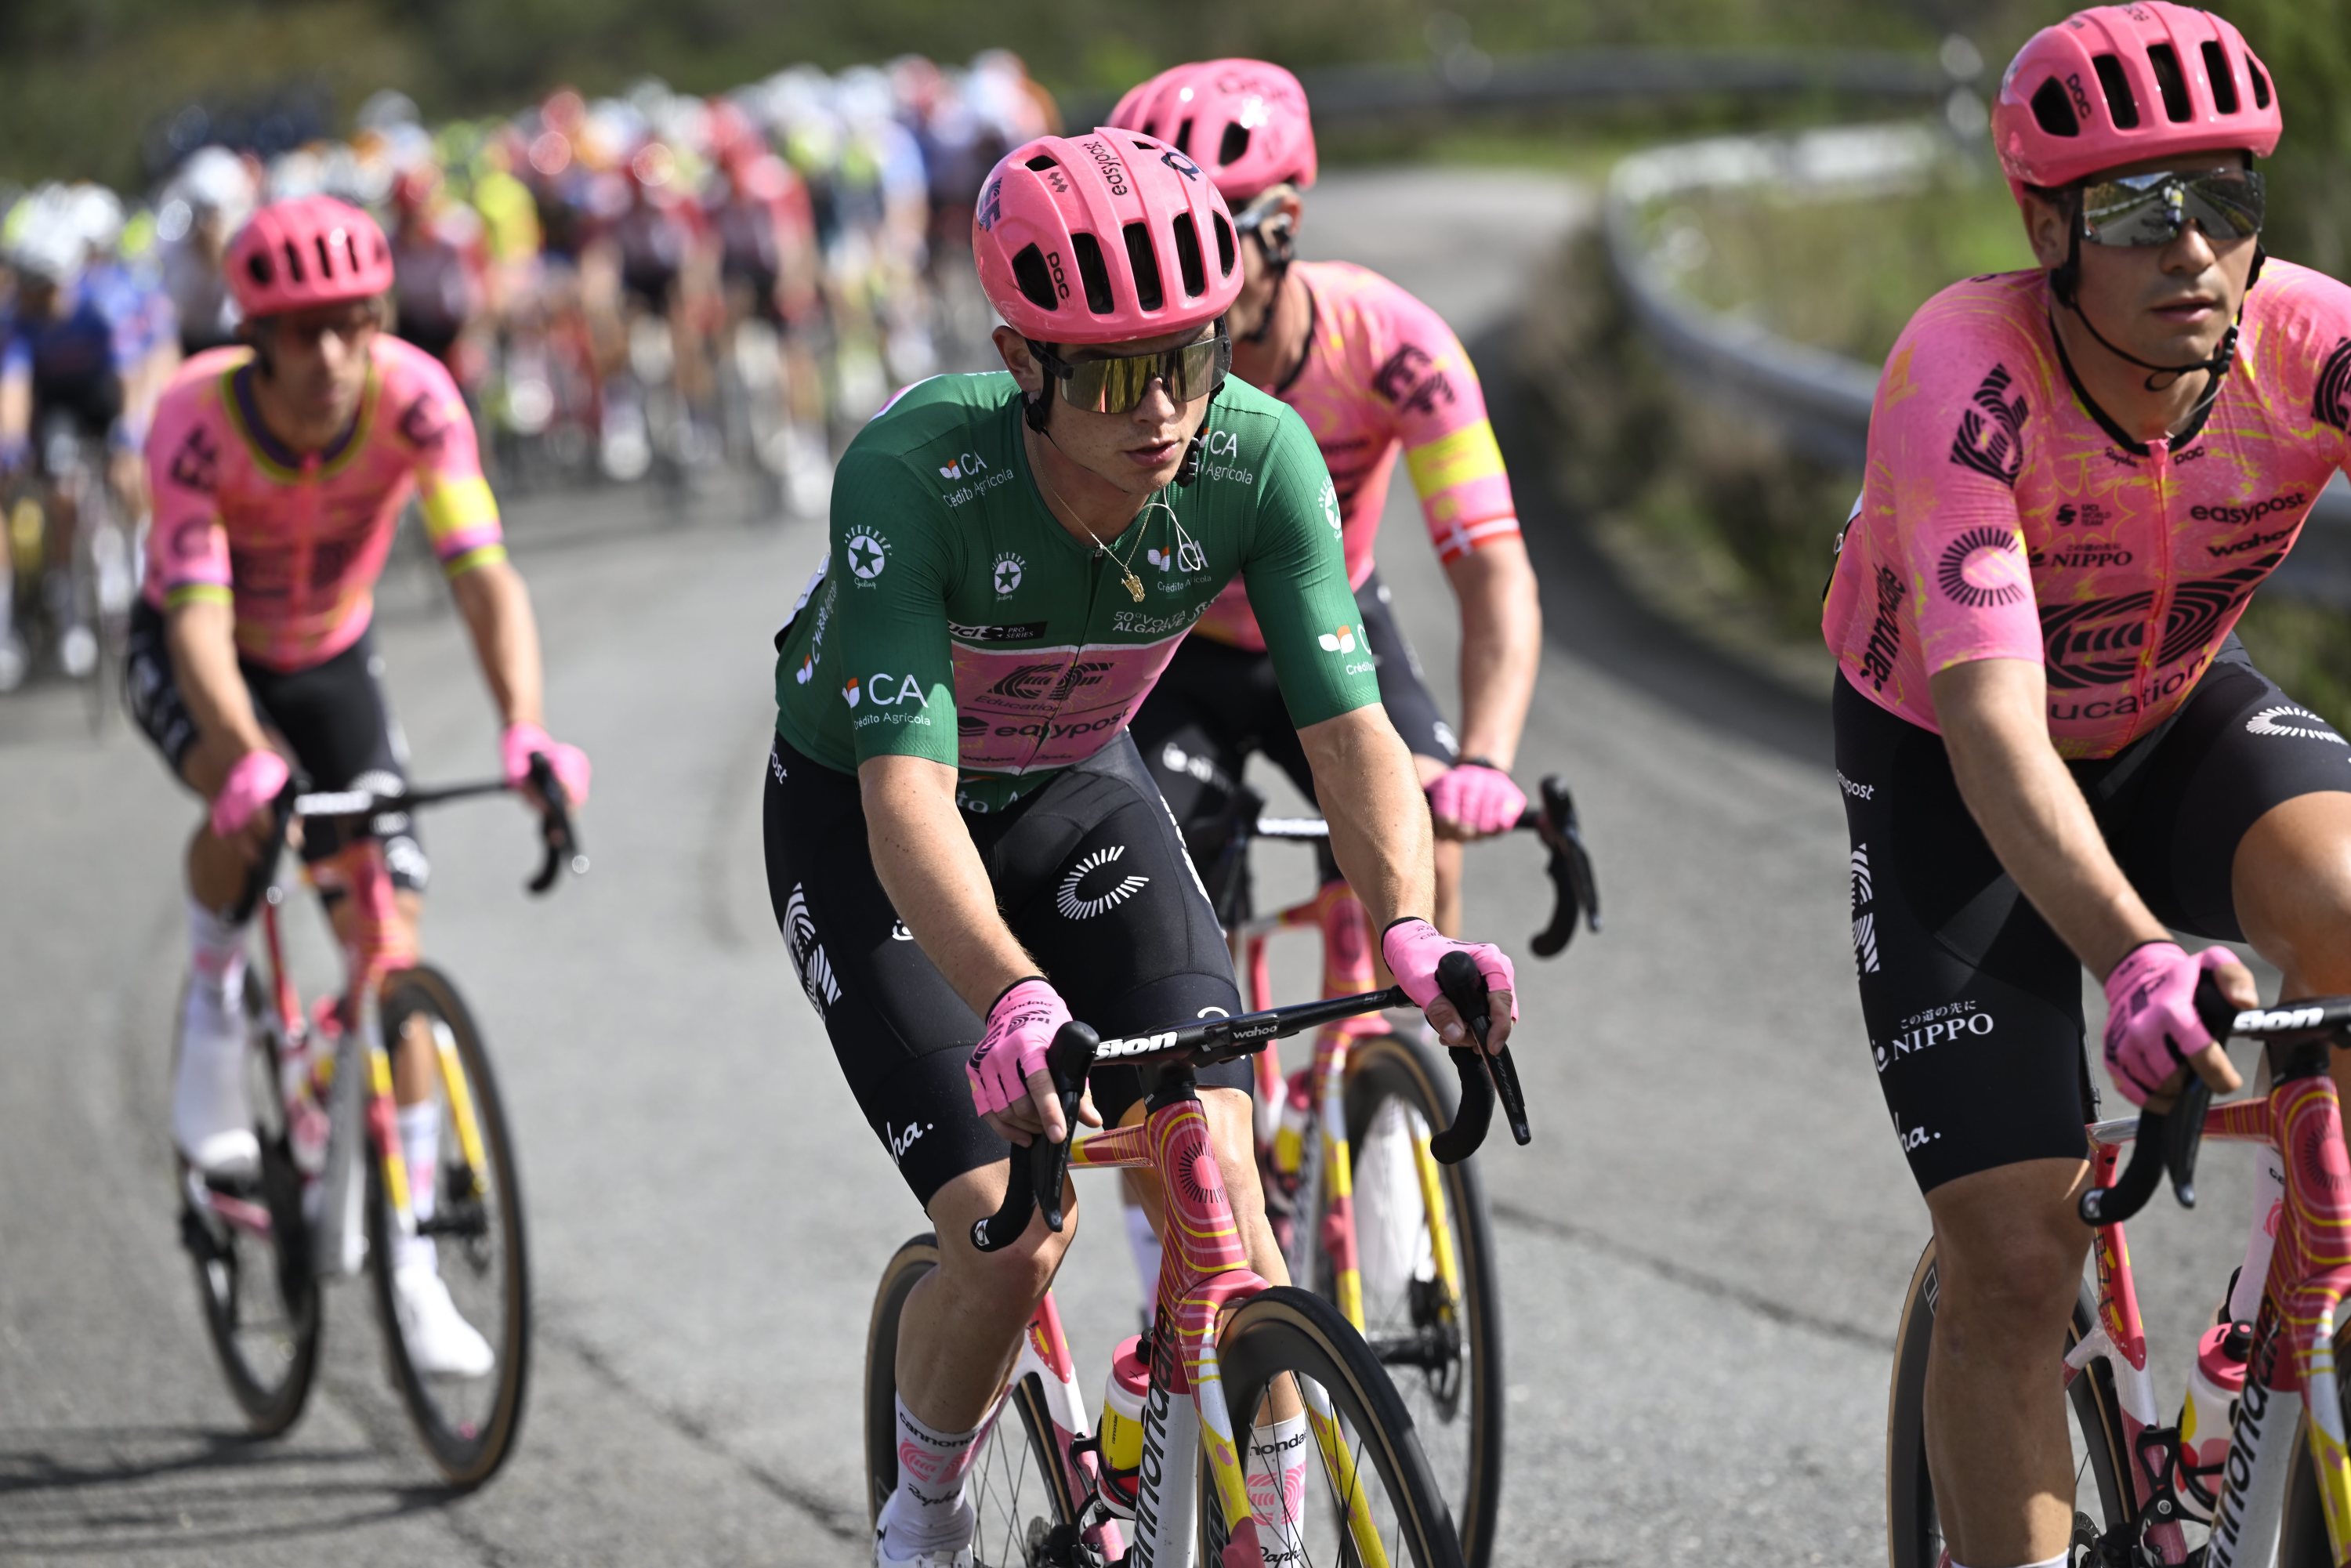 Cyclisme: van den Berg s’impose au sprint pour la quatrième étape du Tour de Catalogne, Pogacar toujours leader